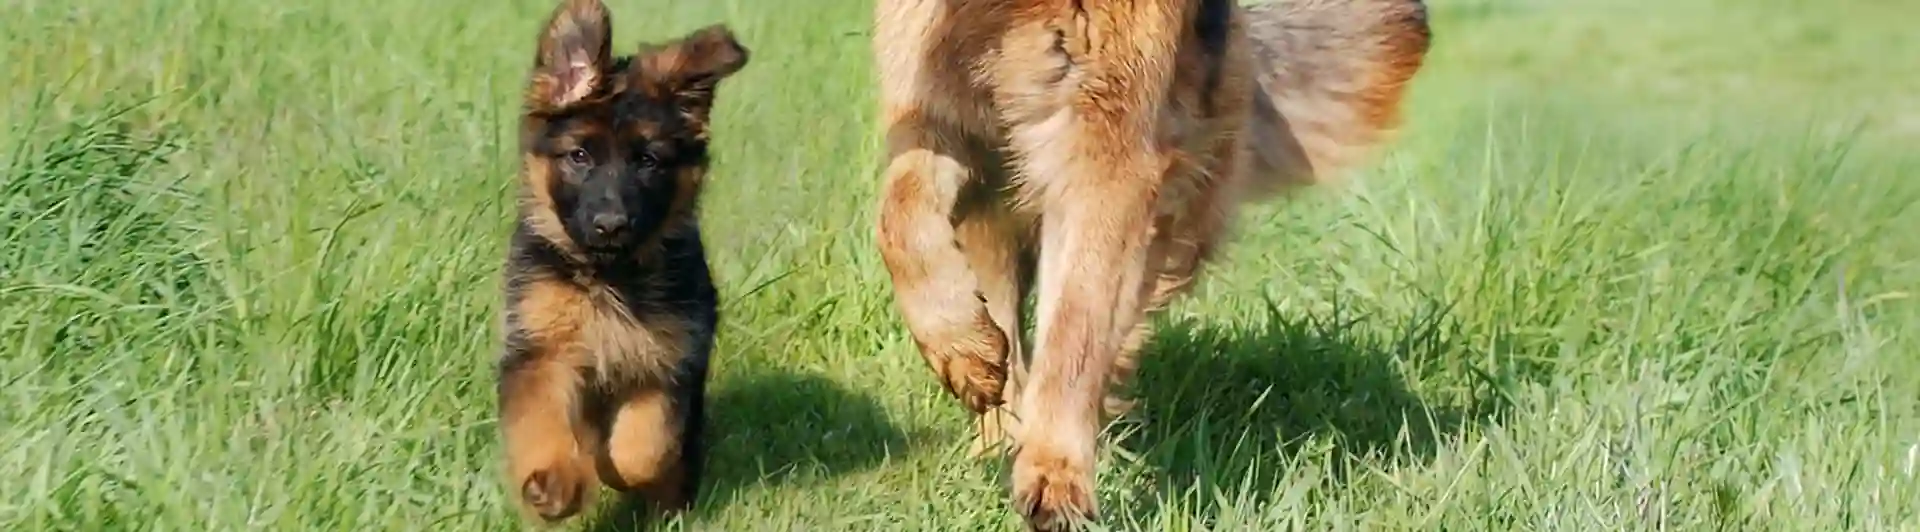 Schäfervalp och vuxen hund med pinne.